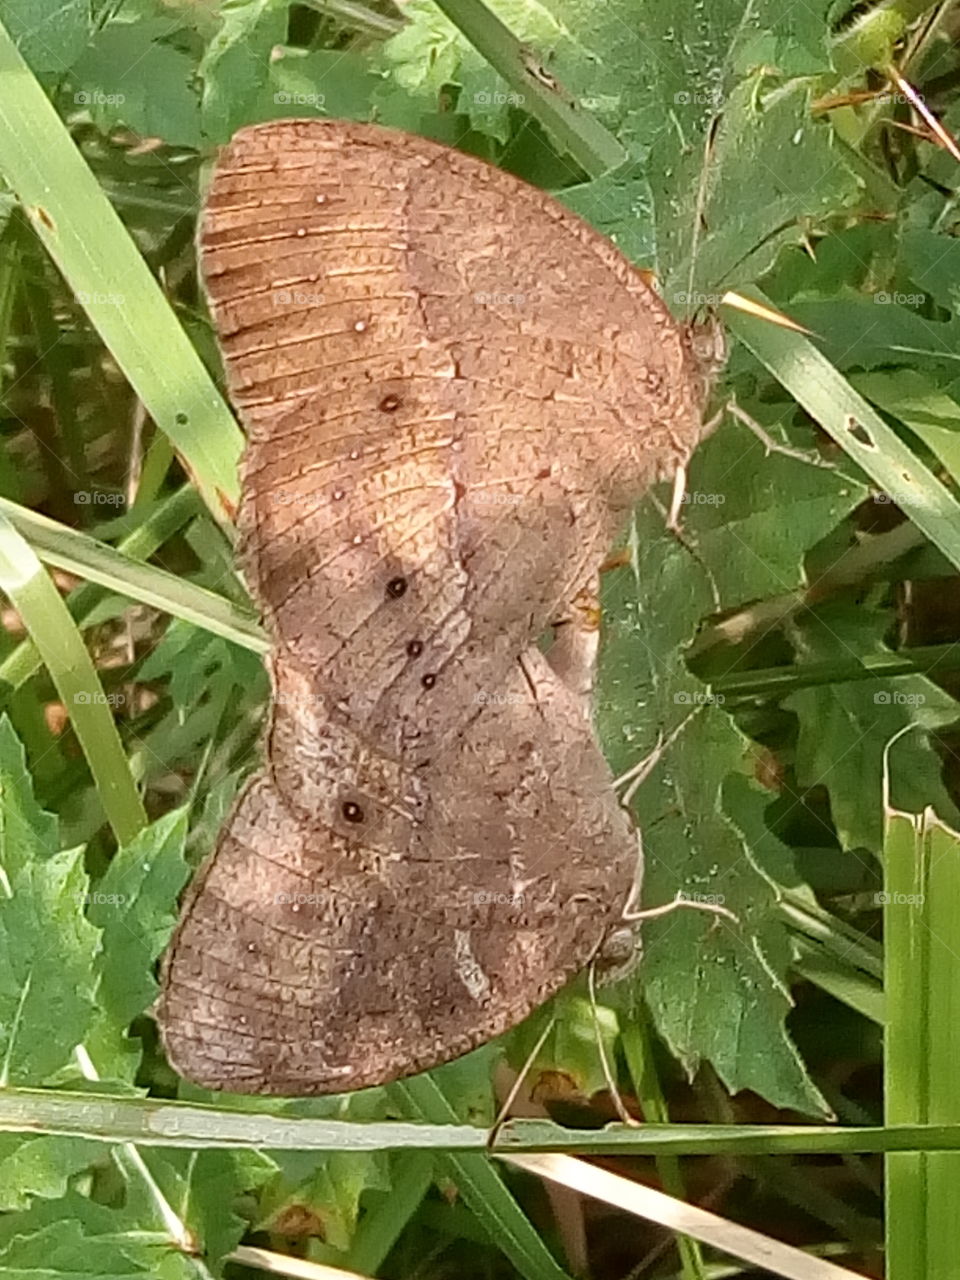 butterfly matting 2018-01-15 005  
#আমার_চোখে #আমার_গ্রাম #nature #butterfly #animalia #arthropoda #insecta #lepidoptera